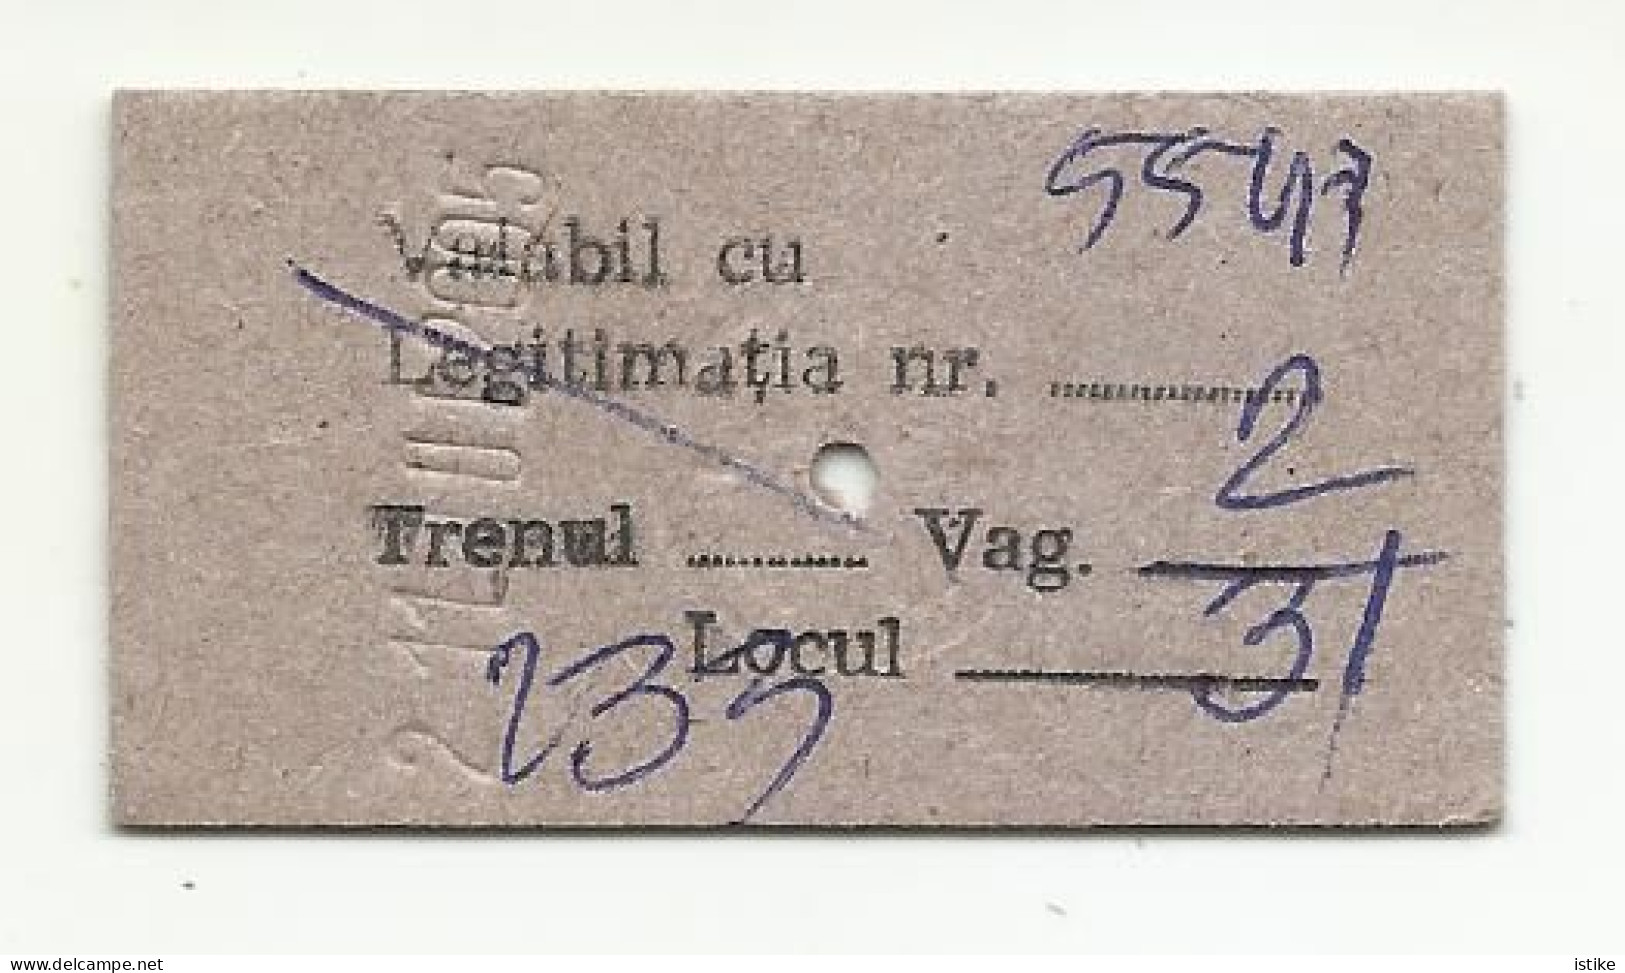 Romania, Intercity Ticket, Cluj - Salonta,  2005. - Europe